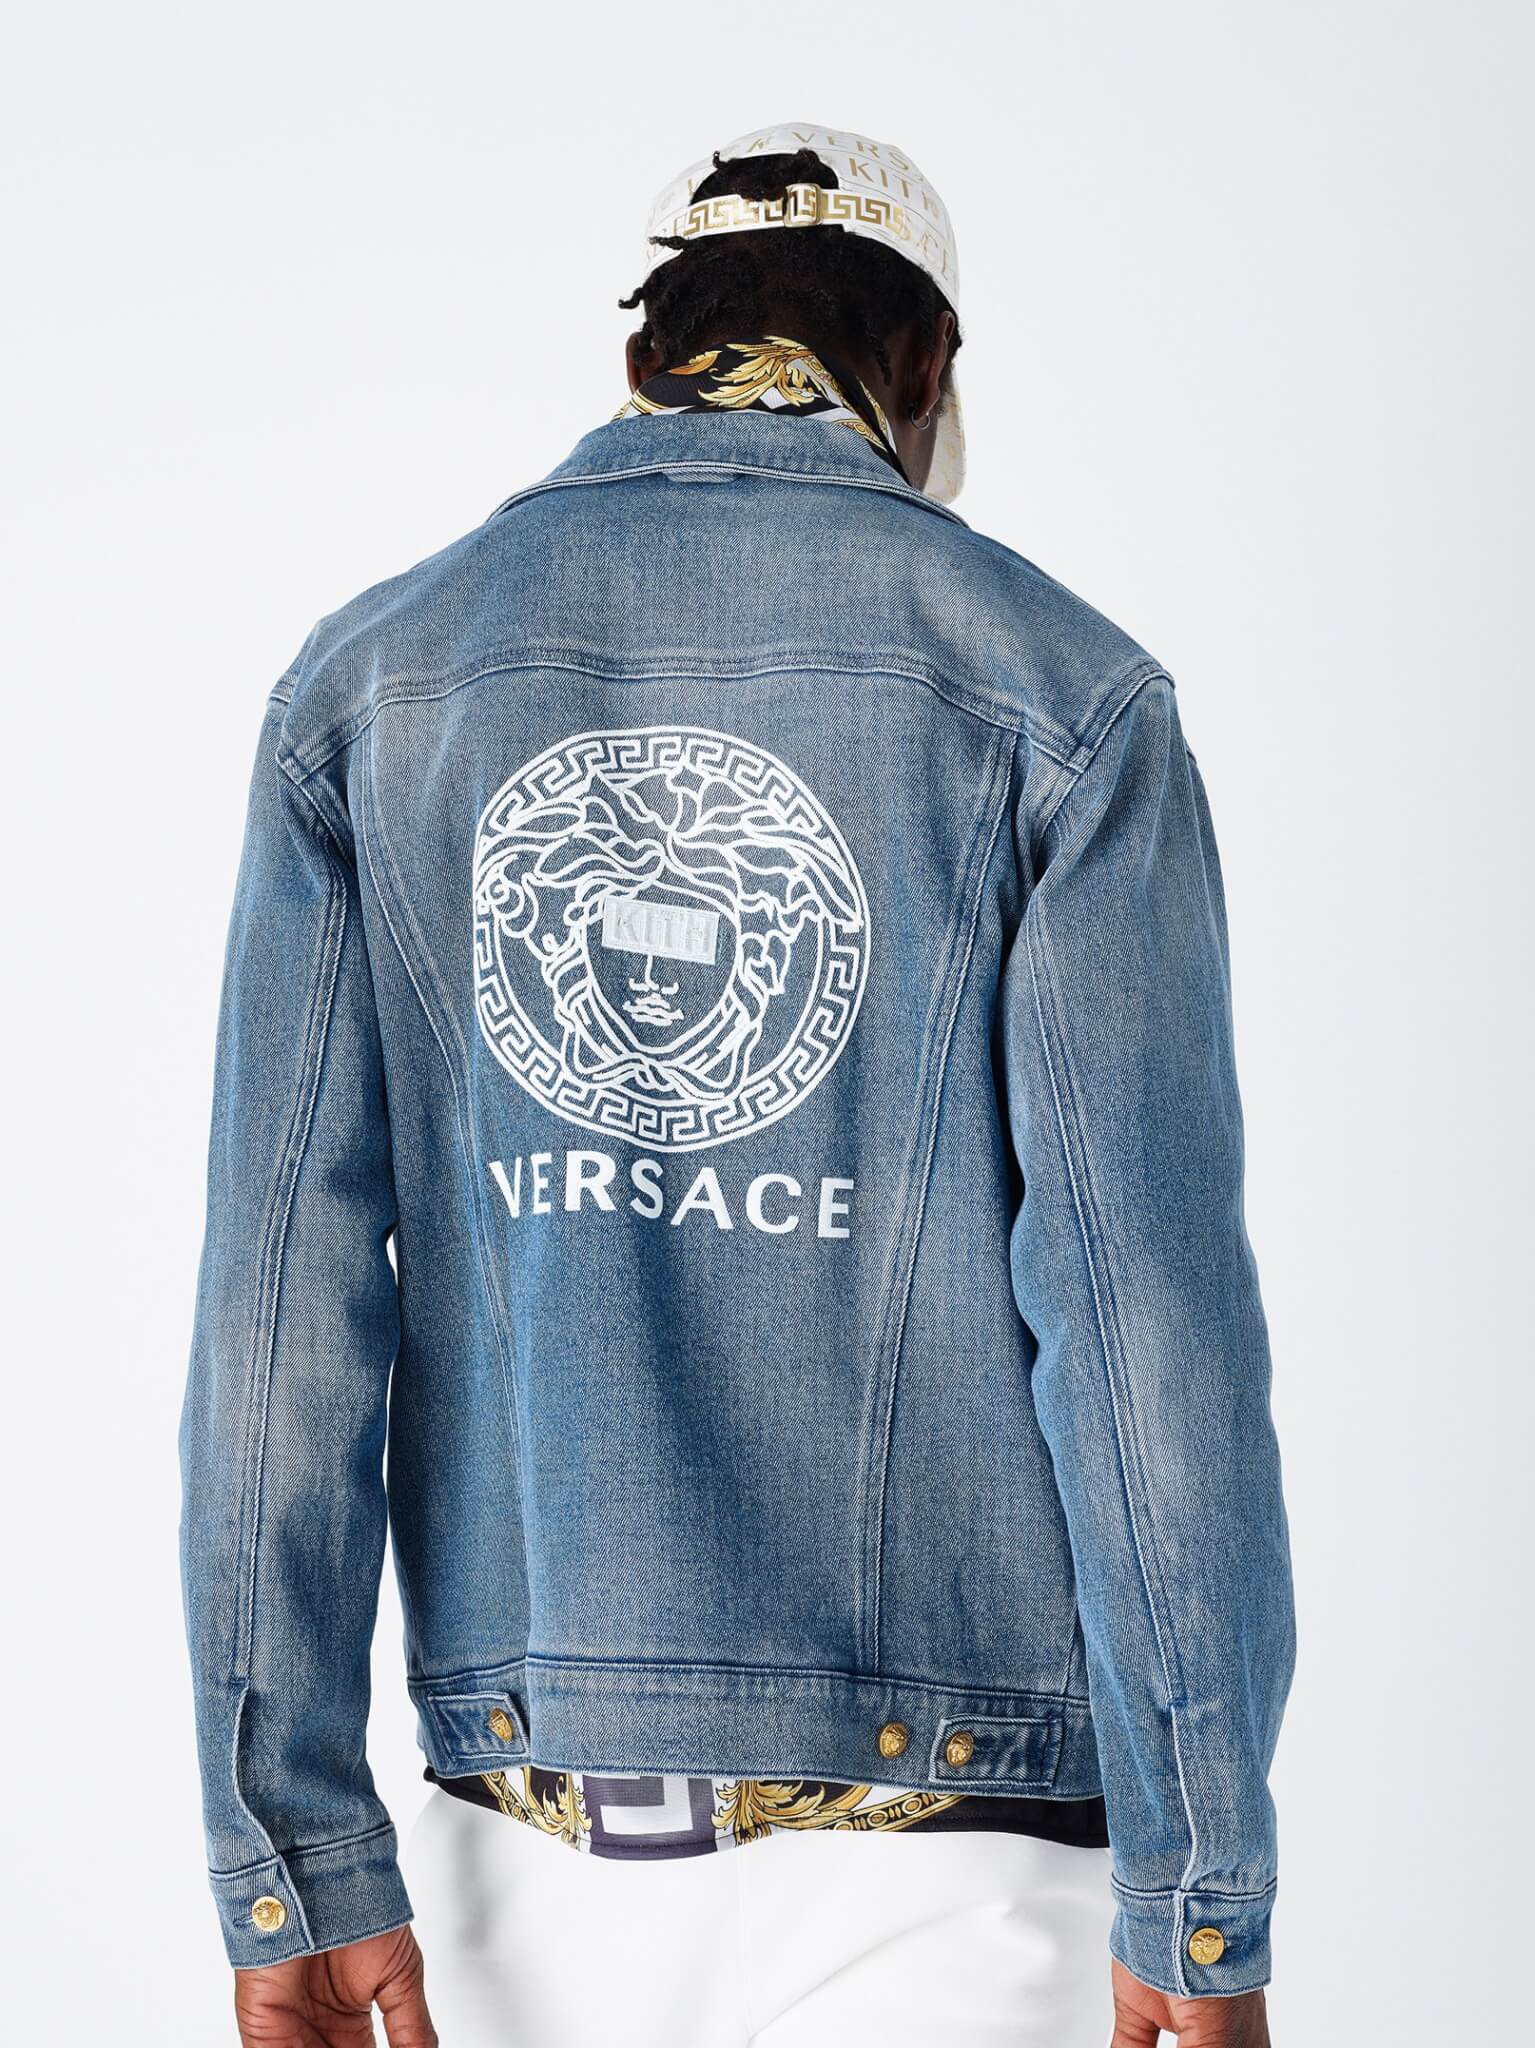 Kith x Versace è la collezione più ambita del momento - 11 a36bbee2 edc6 4aff a182 - Gay.it